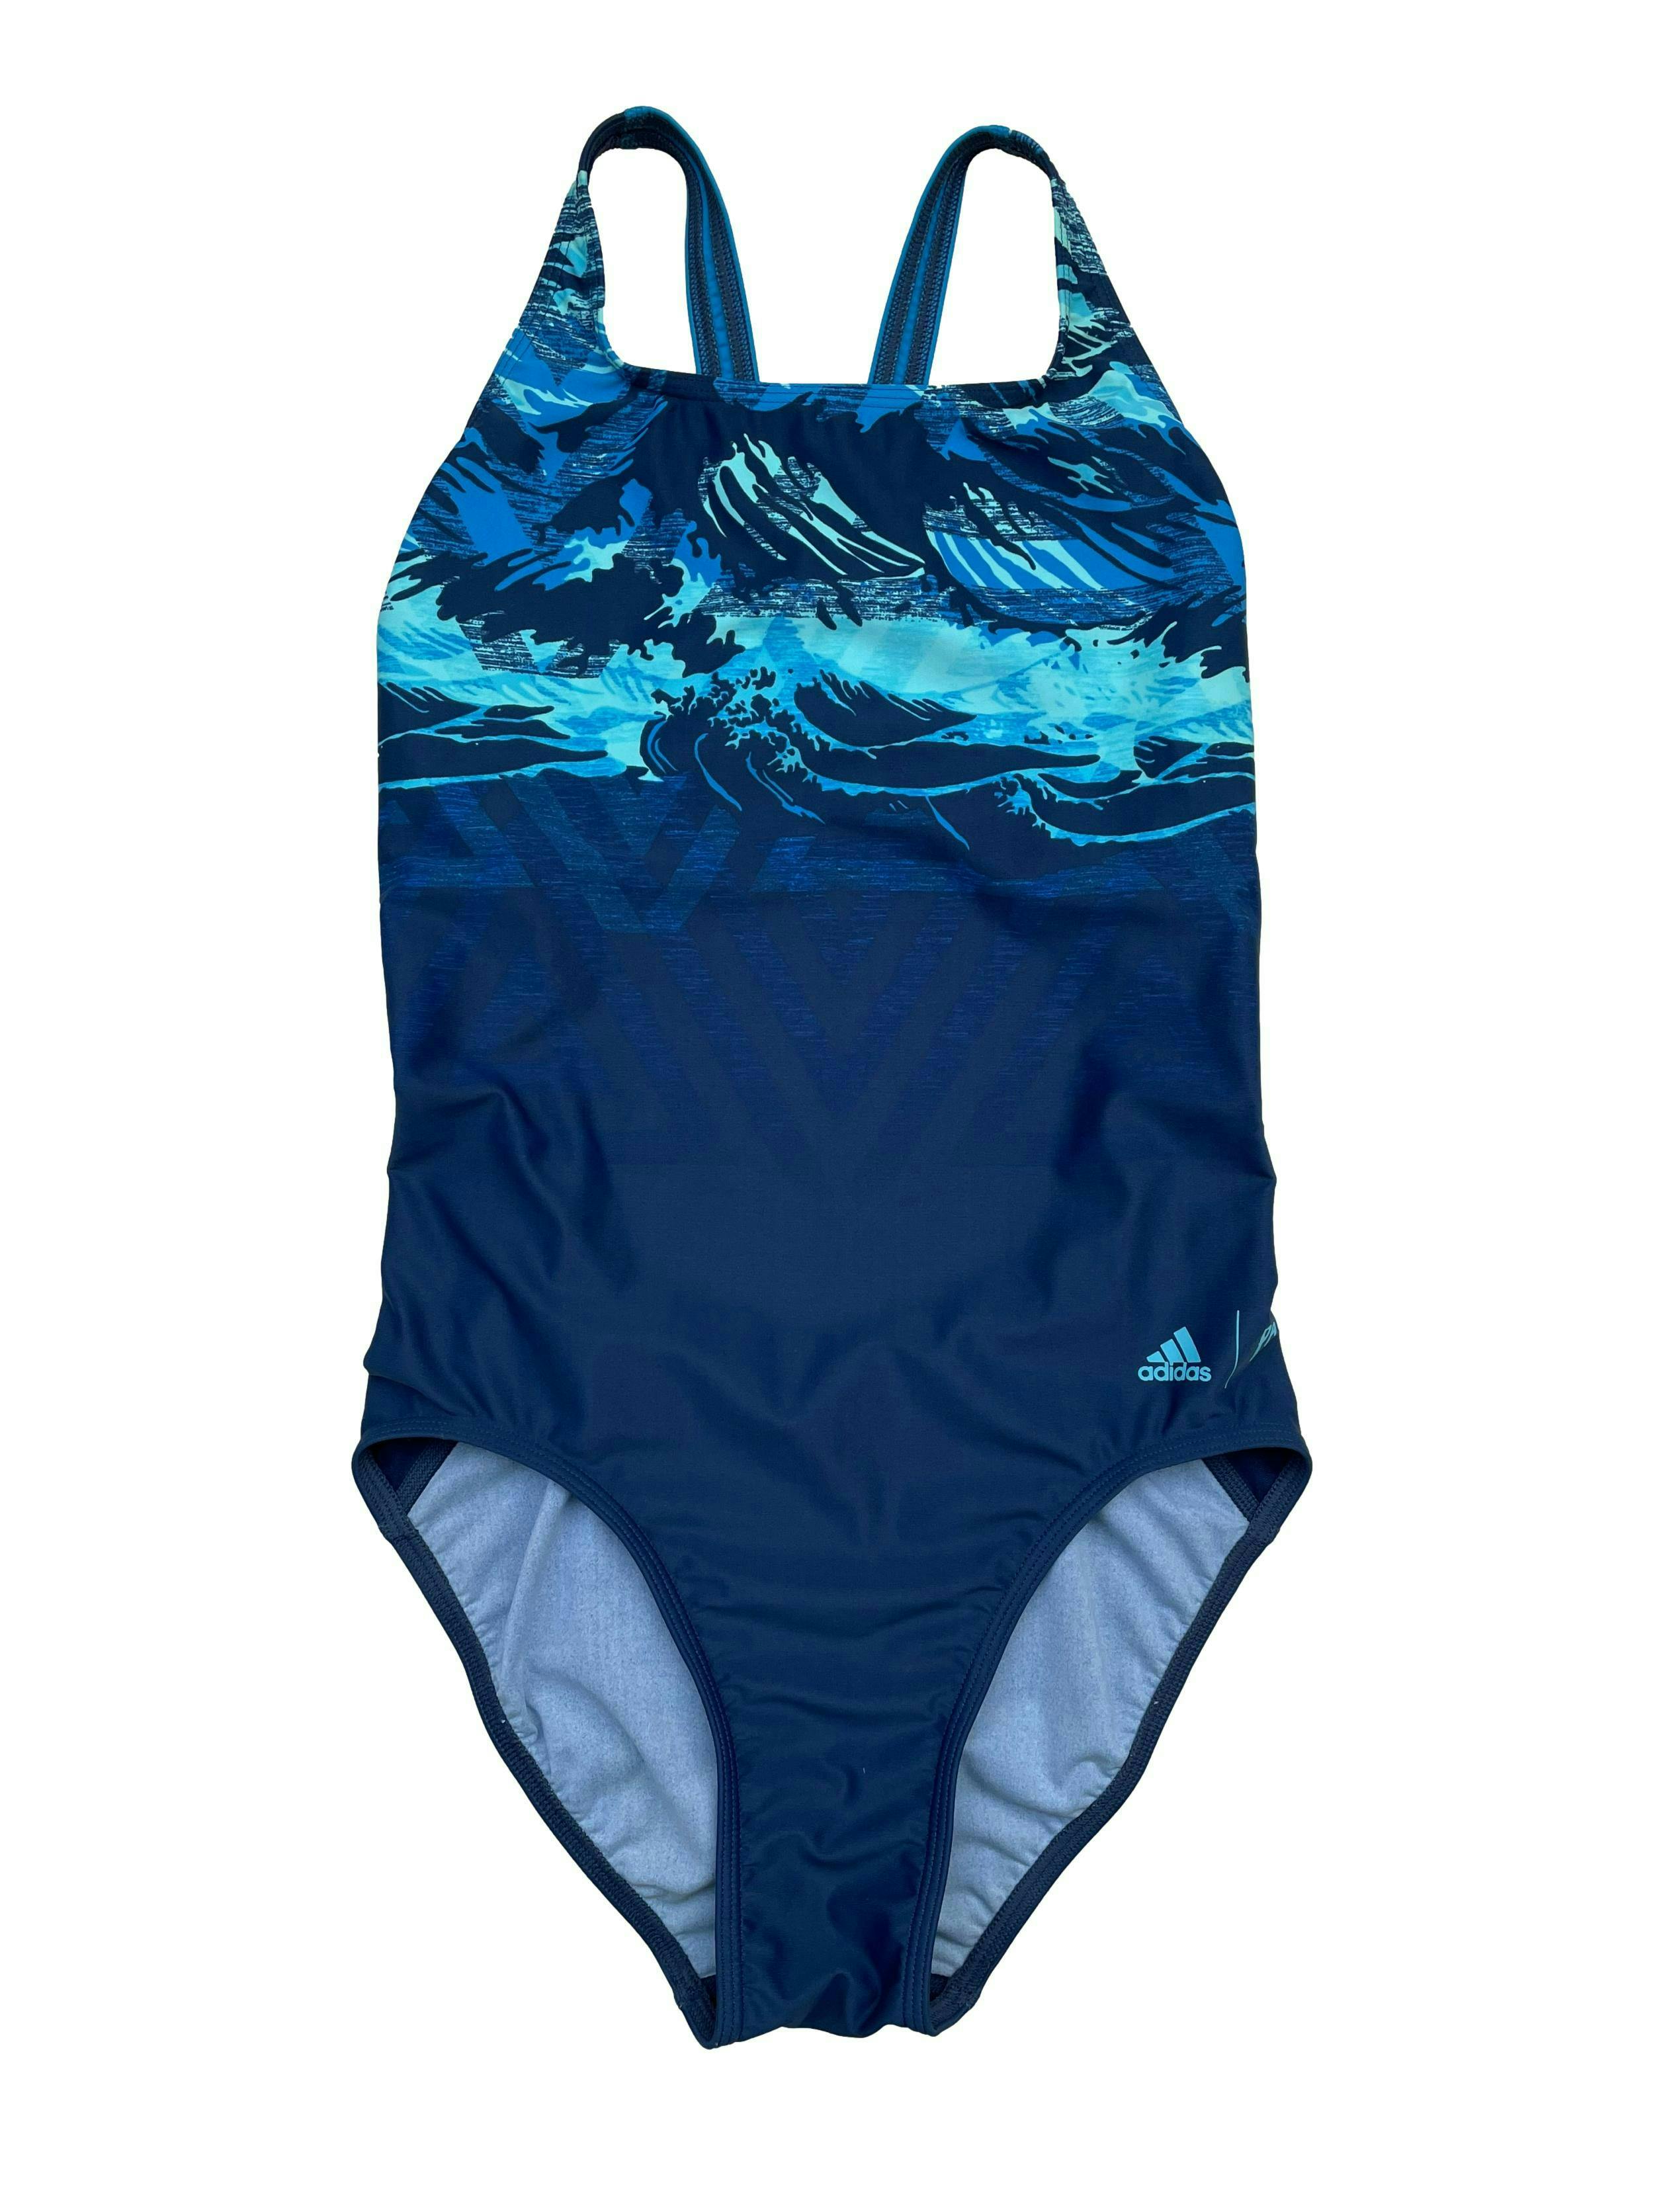 Ropa de baño Adidas en tonos azules, espalda olímpica. 